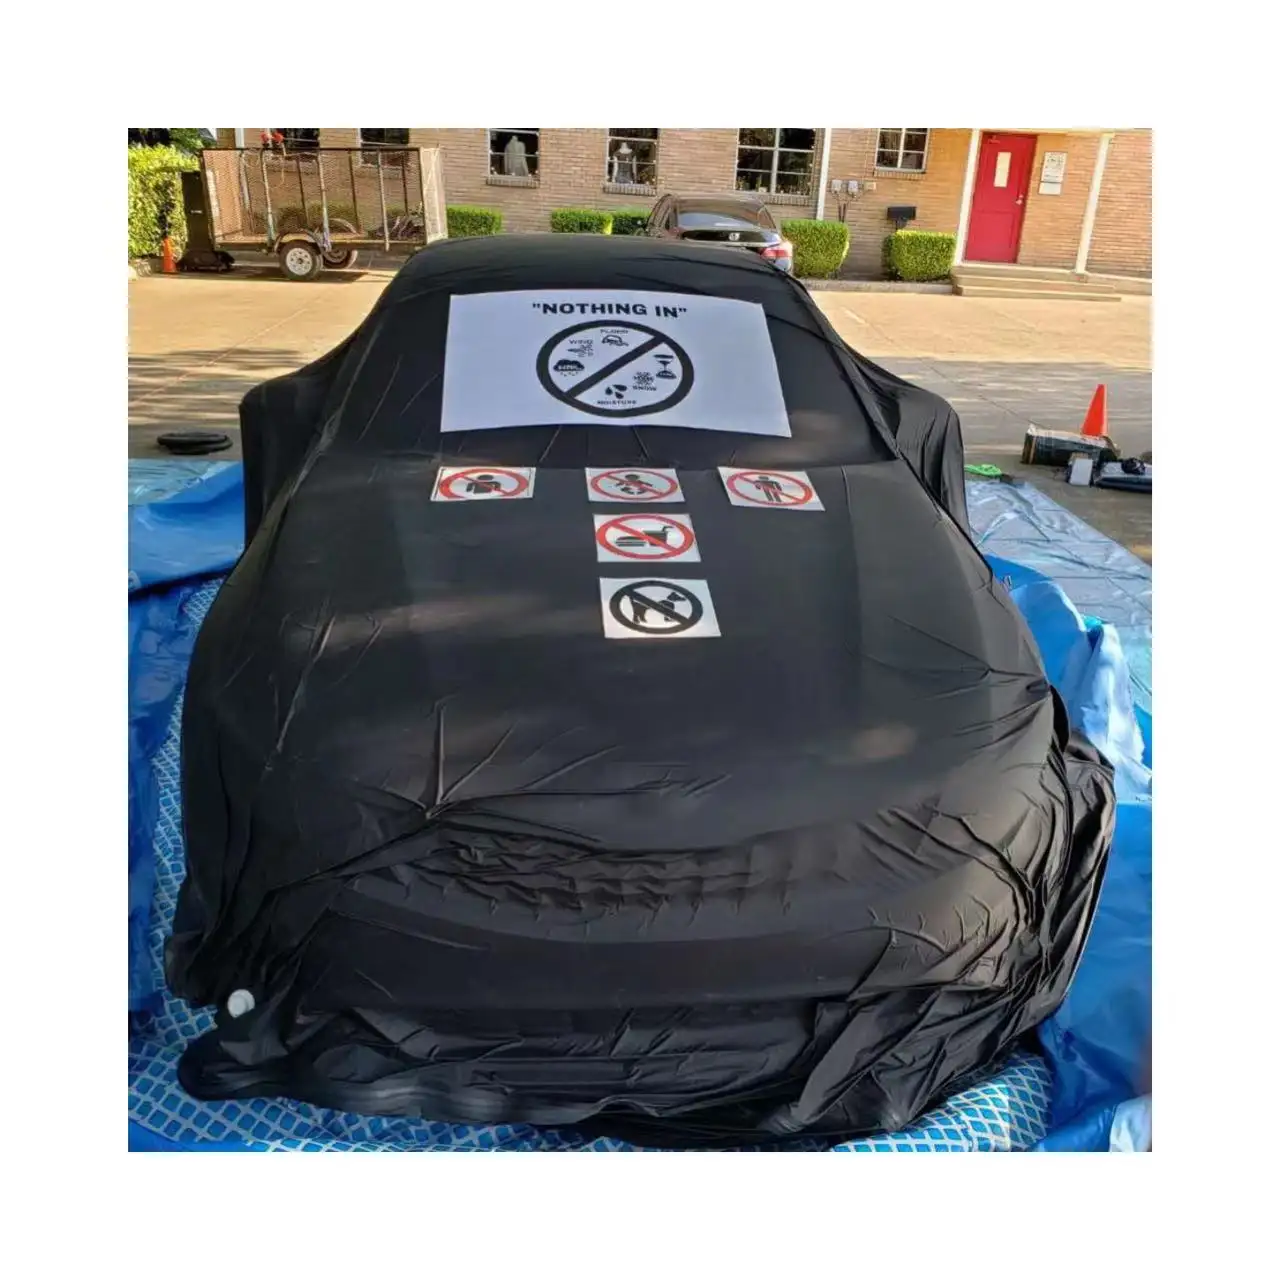 TOPAZ Luftdichte wasserdichte Aufbewahrung tasche für Autos Packs ack Flood Guard Car Bag Große luftdichte Kapsel kann aufgeblasen und vakuum iert werden